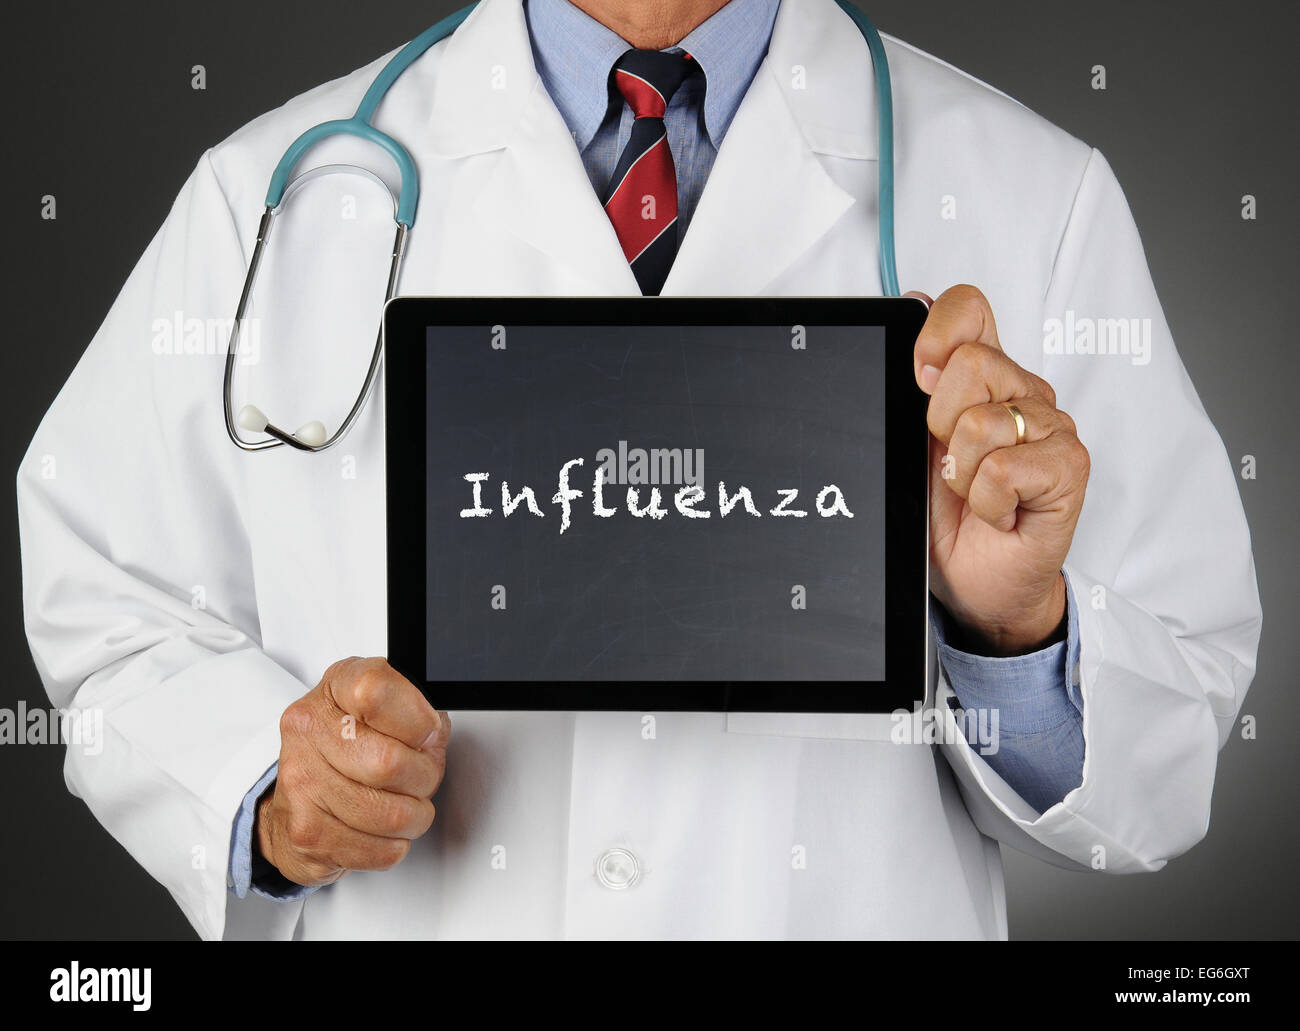 Primer plano de un doctor sosteniendo un tablet pc con una pantalla de la pizarra con la palabra Influenza. El hombre es irreconocible. Foto de stock